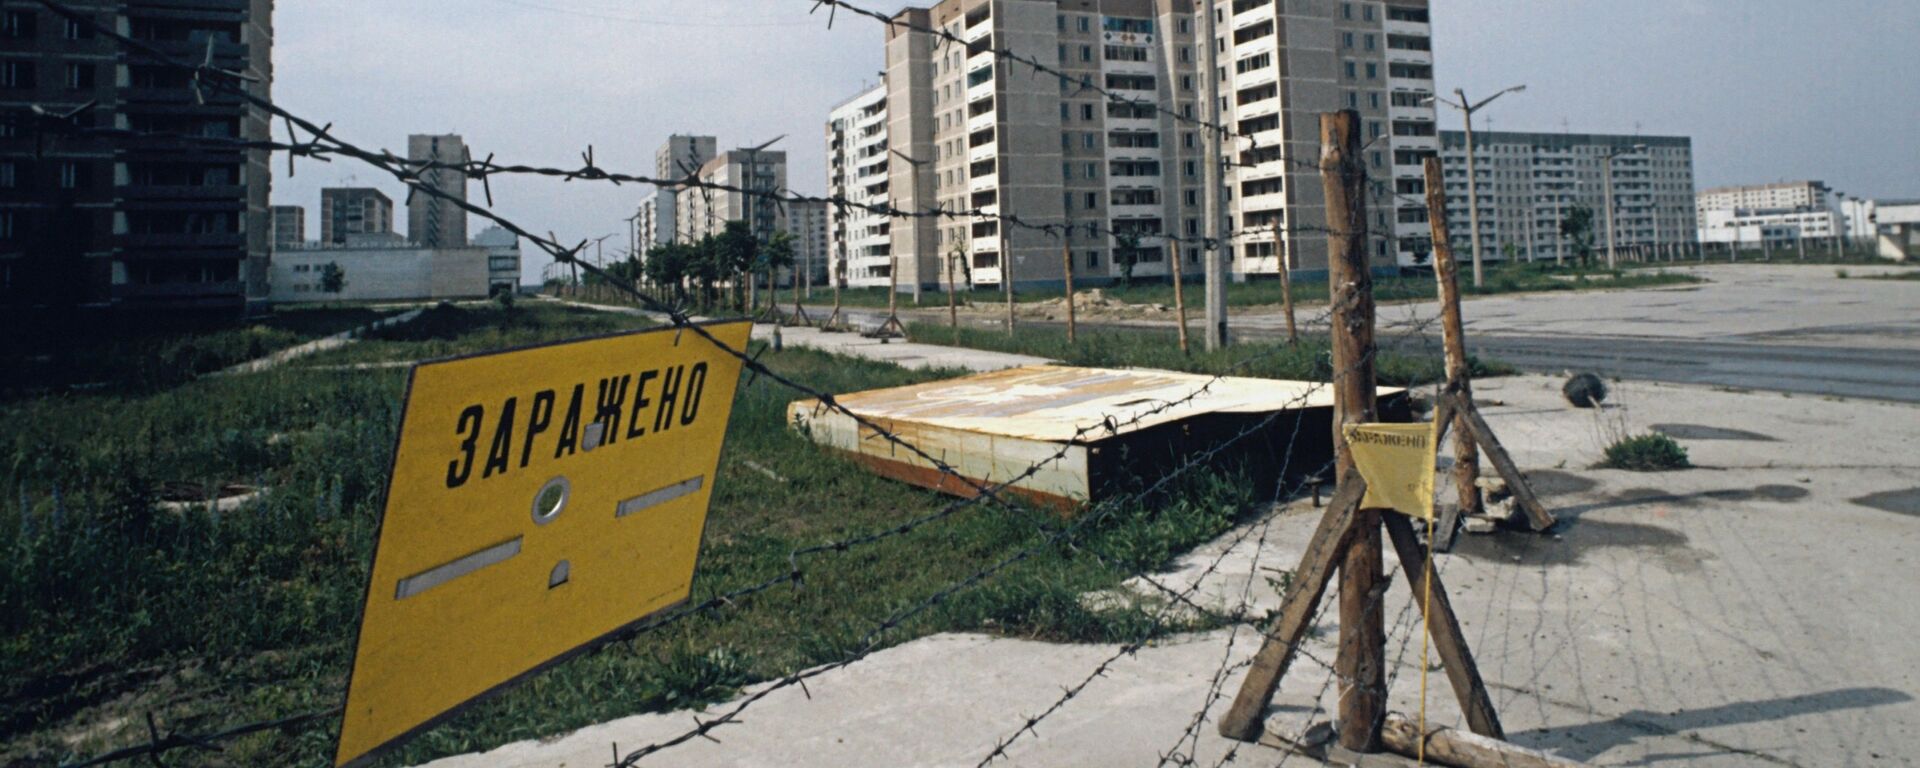 Ограждения на улицах города Припяти в Киевской области после аварии на Чернобыльской АЭС. 1986 г. - Sputnik Таджикистан, 1920, 04.02.2020